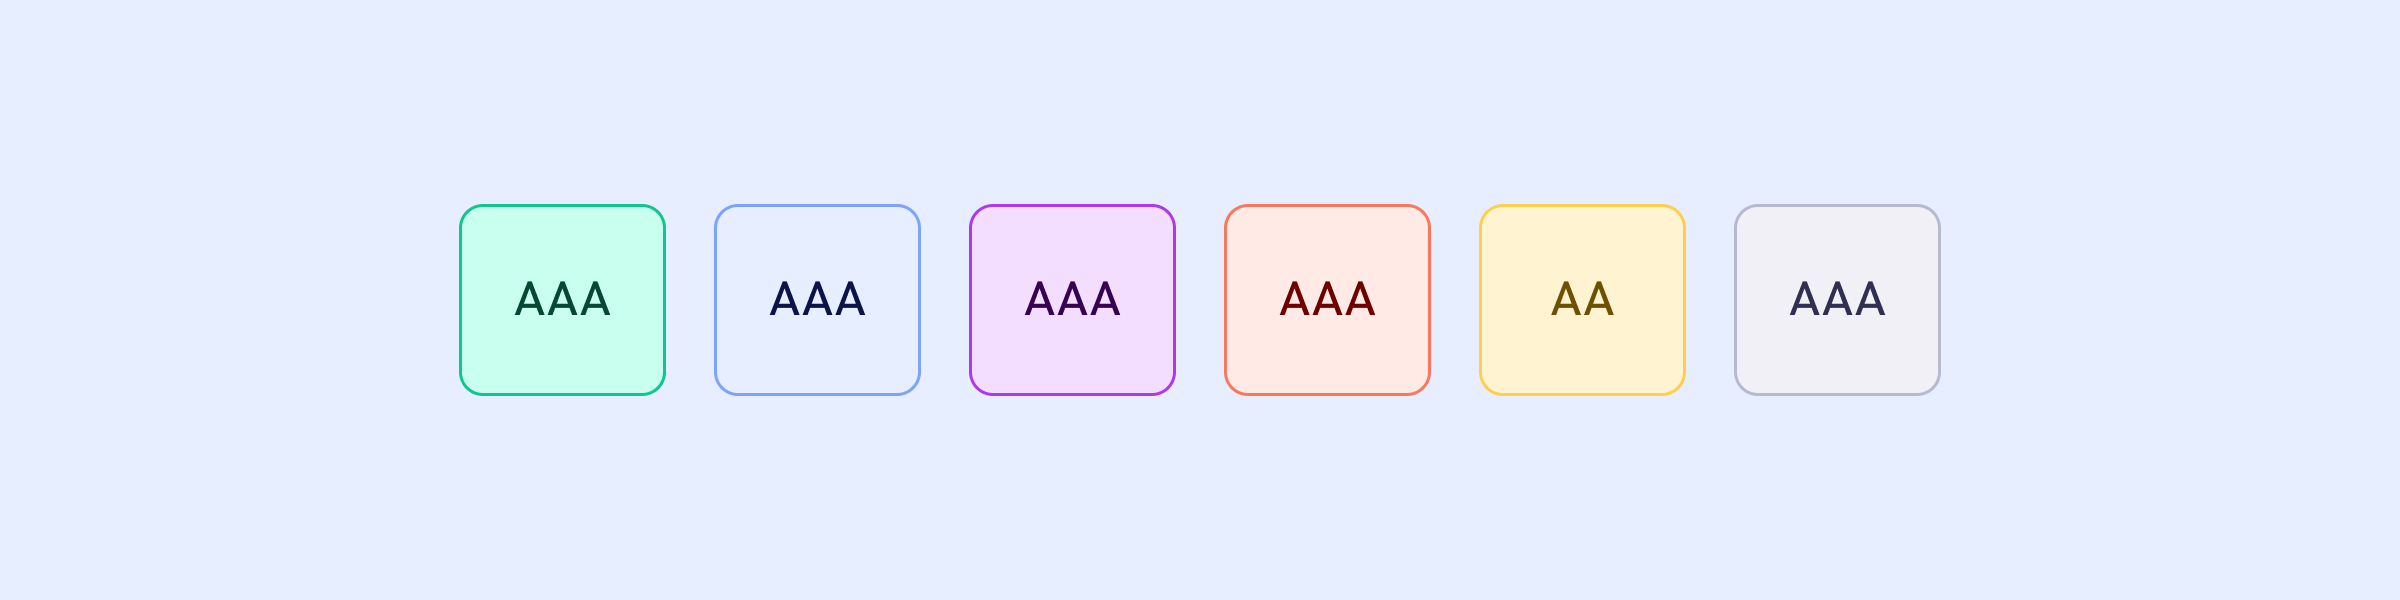 Seis quadrados coloridos, um com cada theme color, e uma legenda interna
indicando o contraste de acordo com WCAG, AA e
AAA.